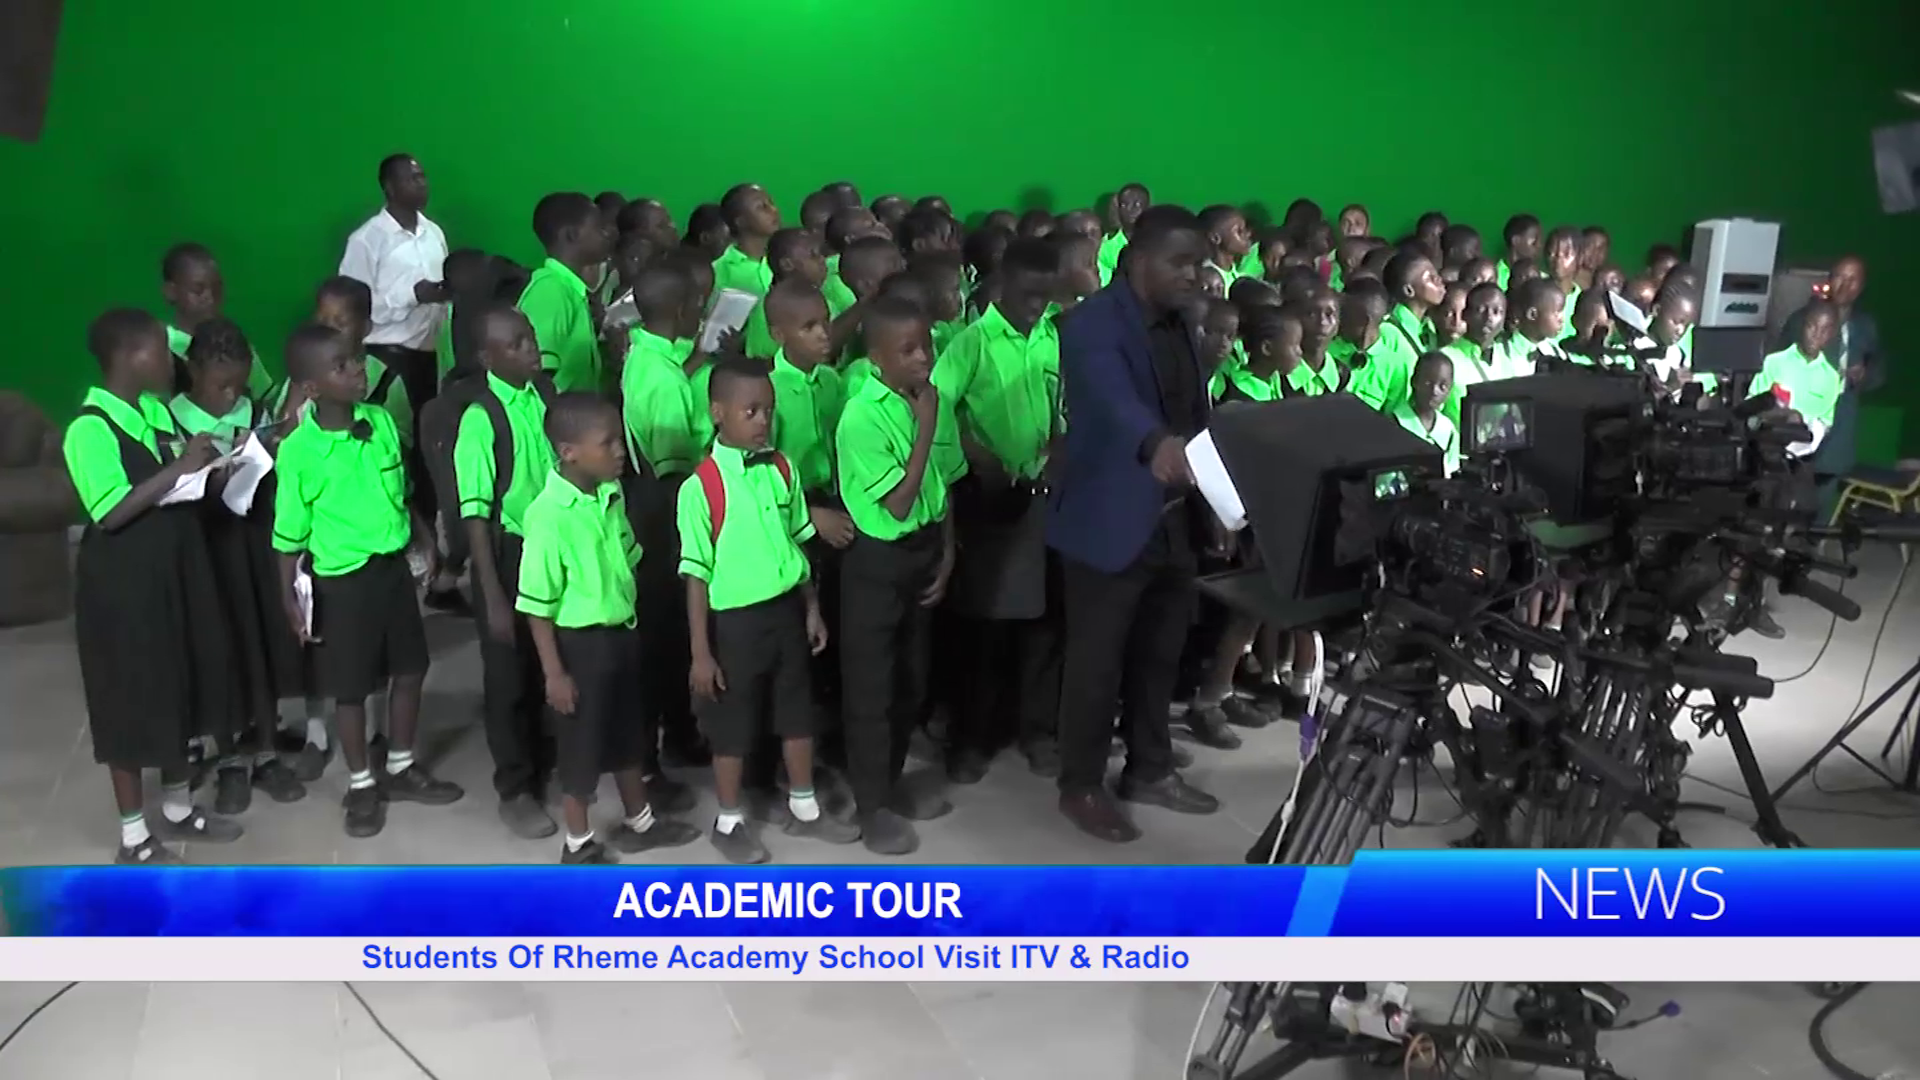 Students Of Rheme Academy School Visit ITV & Radio